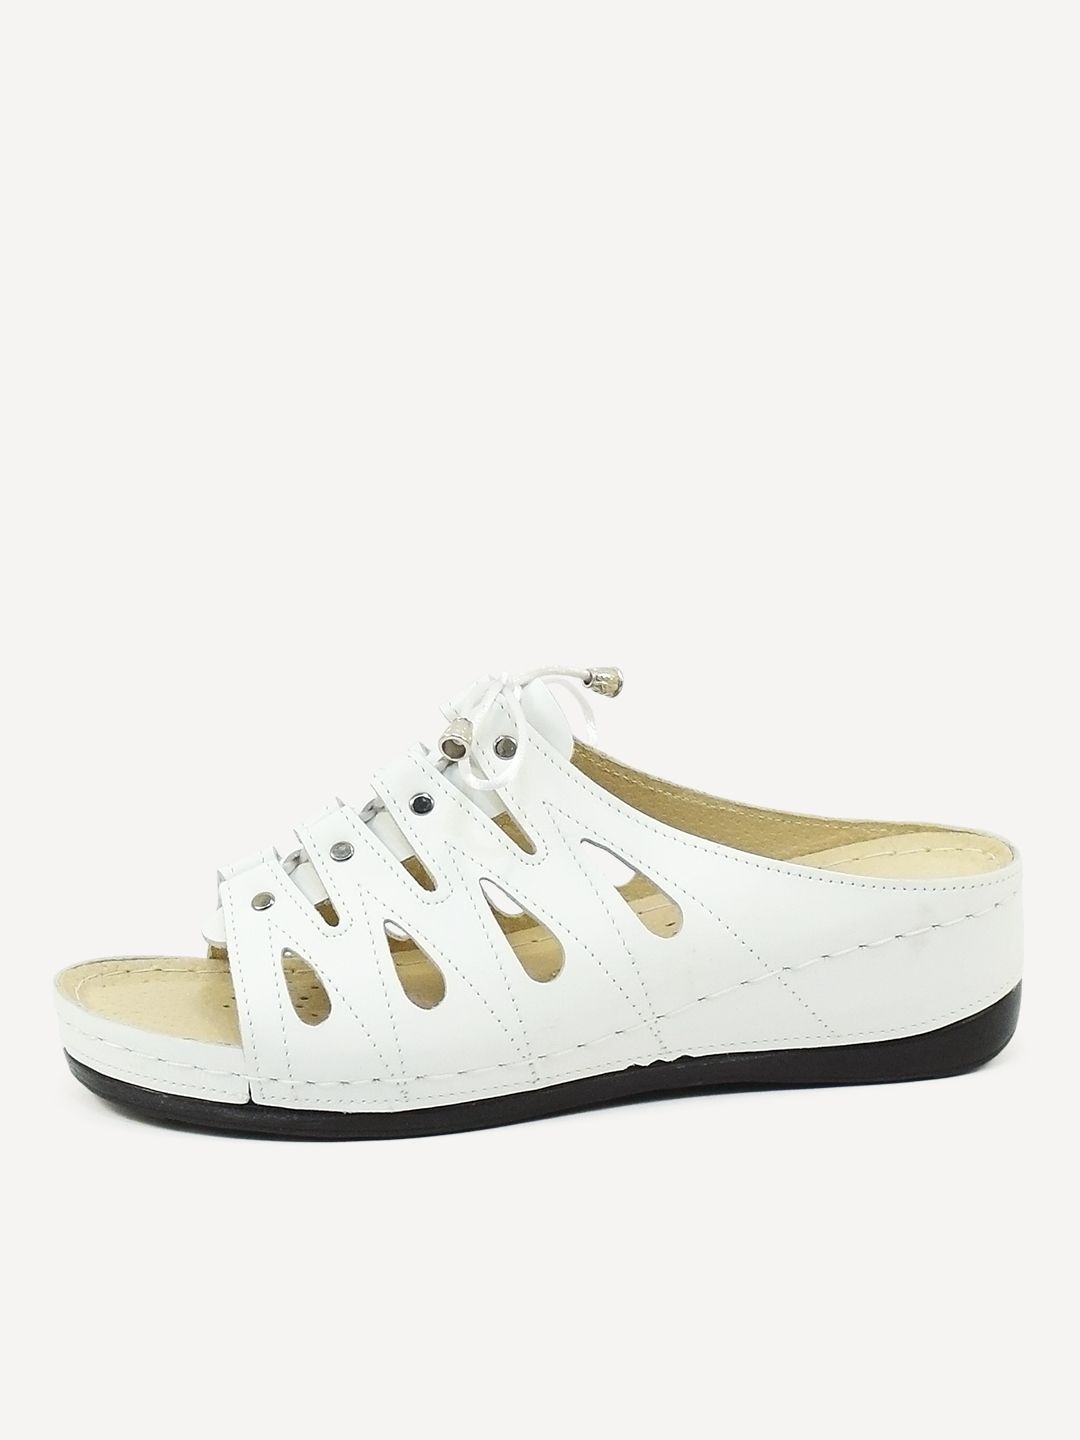 Сабо женские Melitta Shoes 008 белые 39 RU